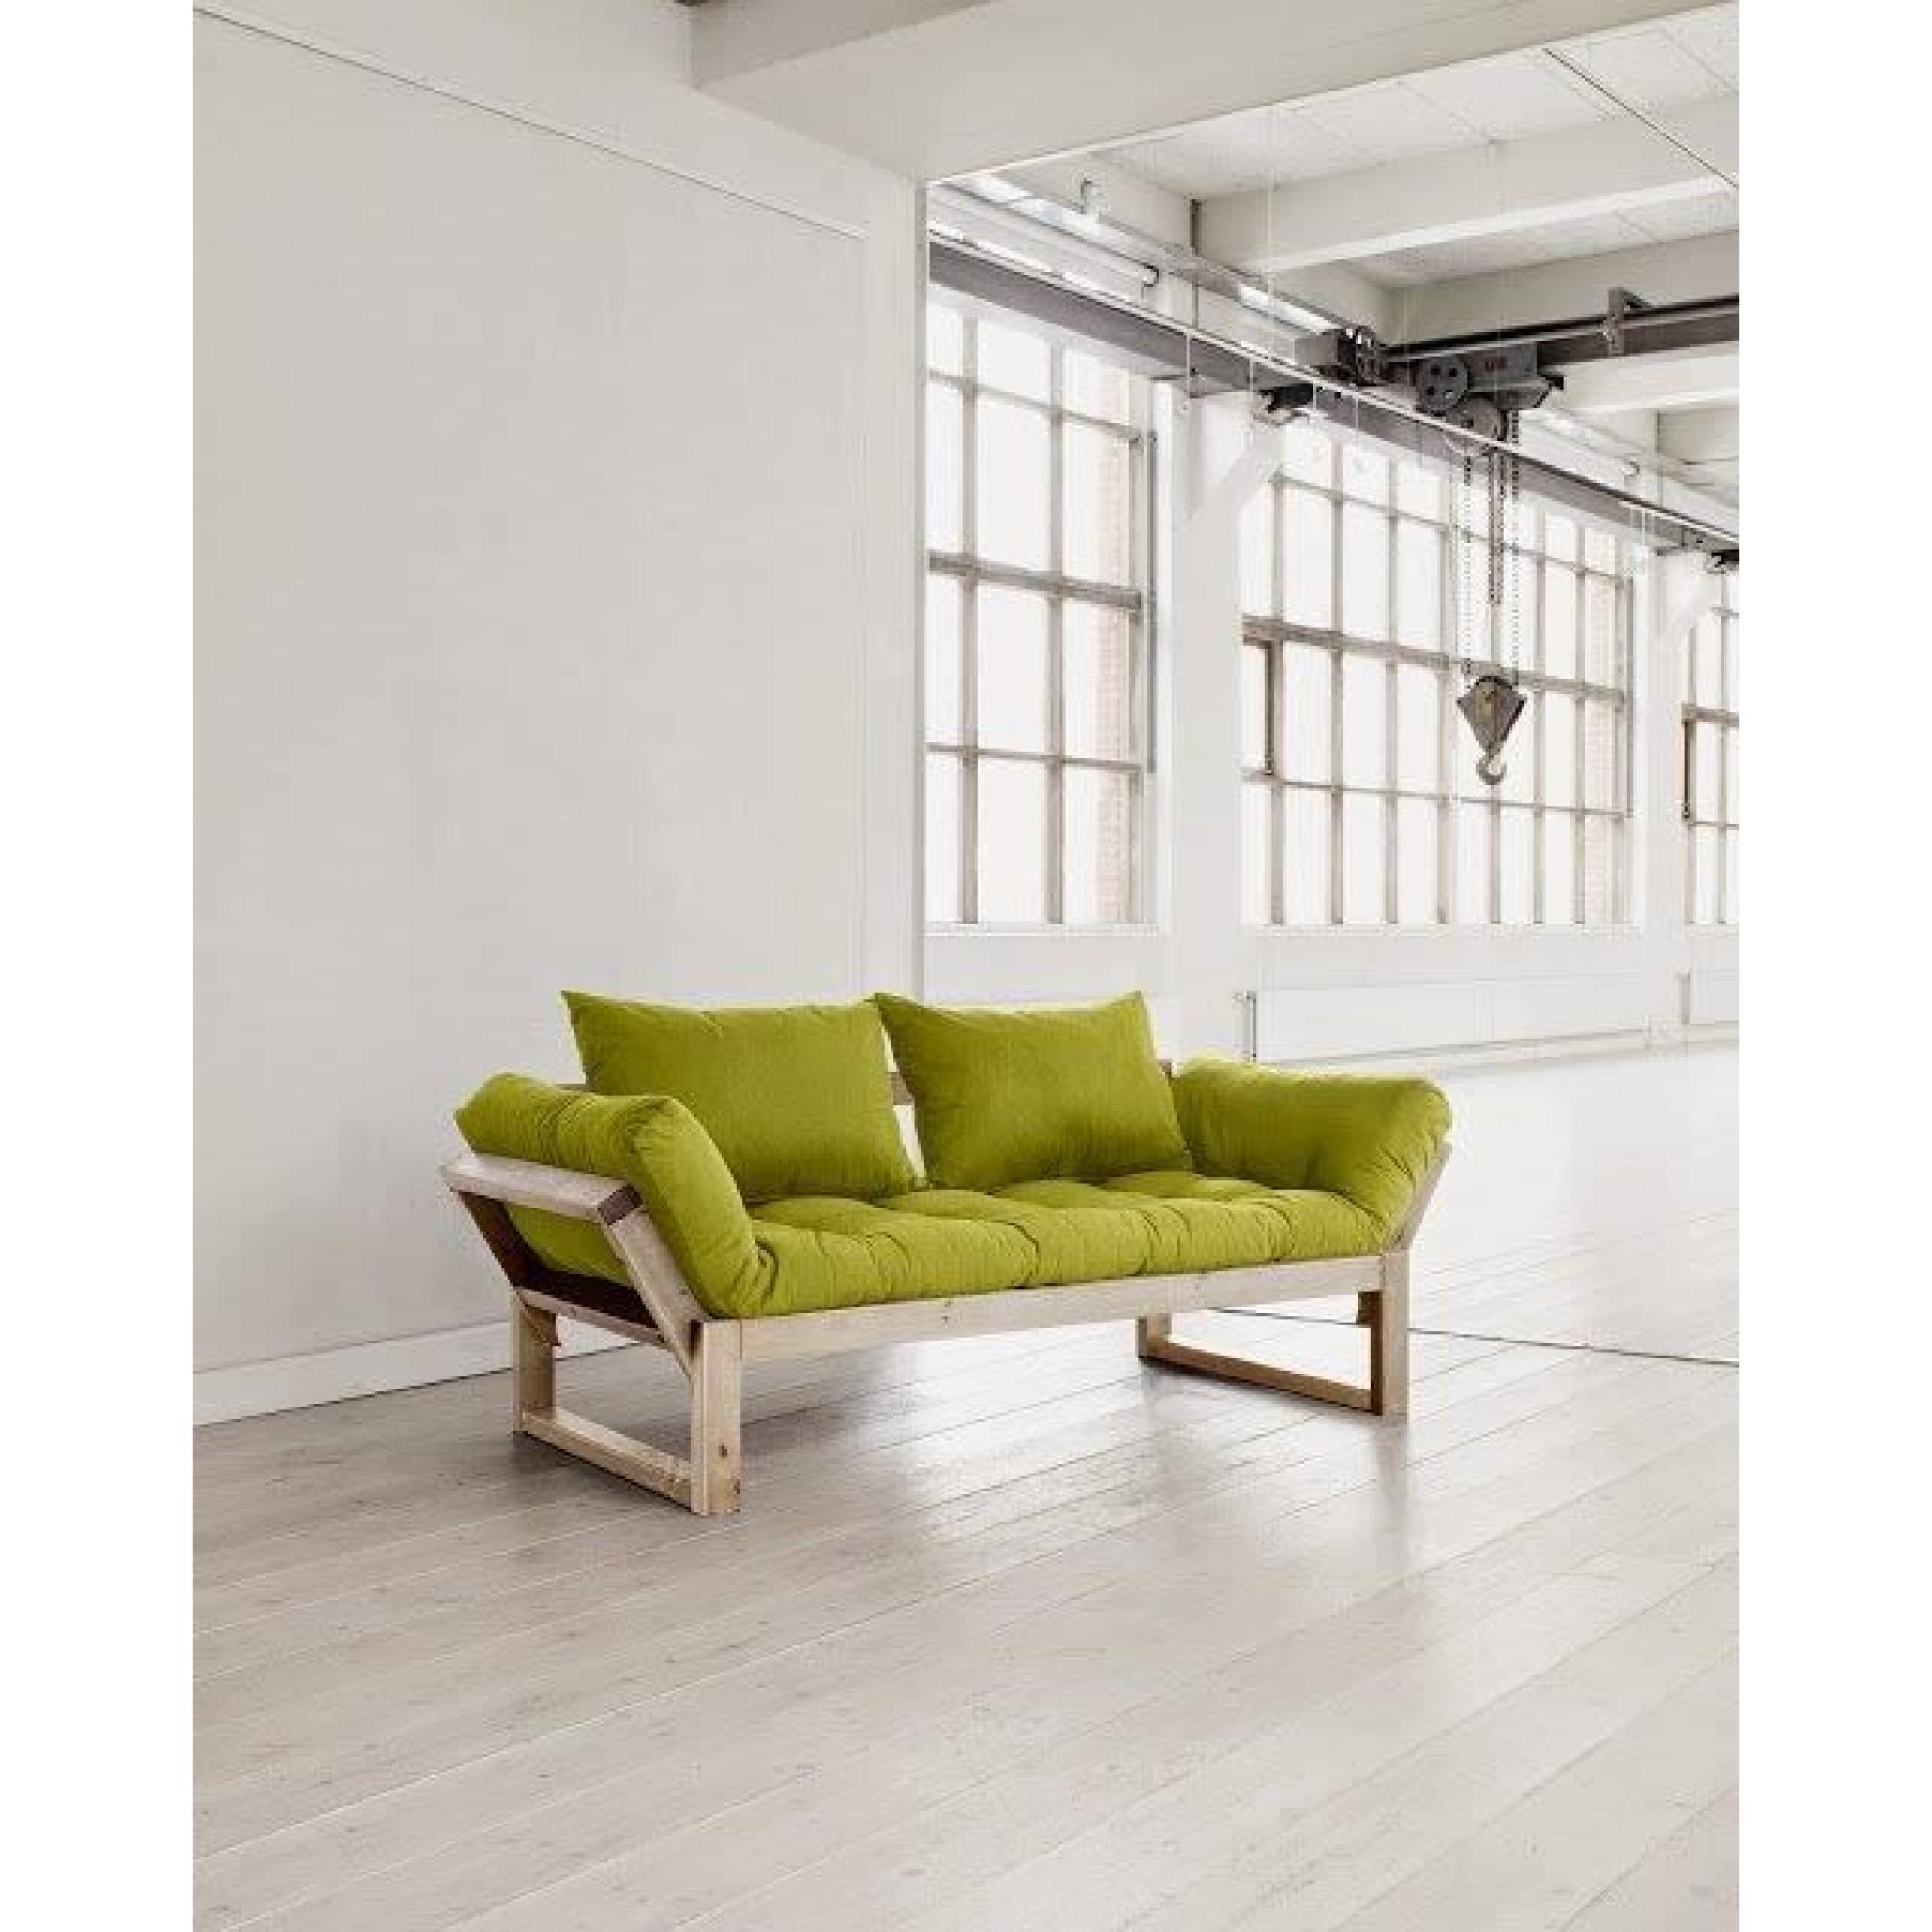 Banquette méridienne style scandinave futon vert pistache EDGE couchage 75*200cm pas cher